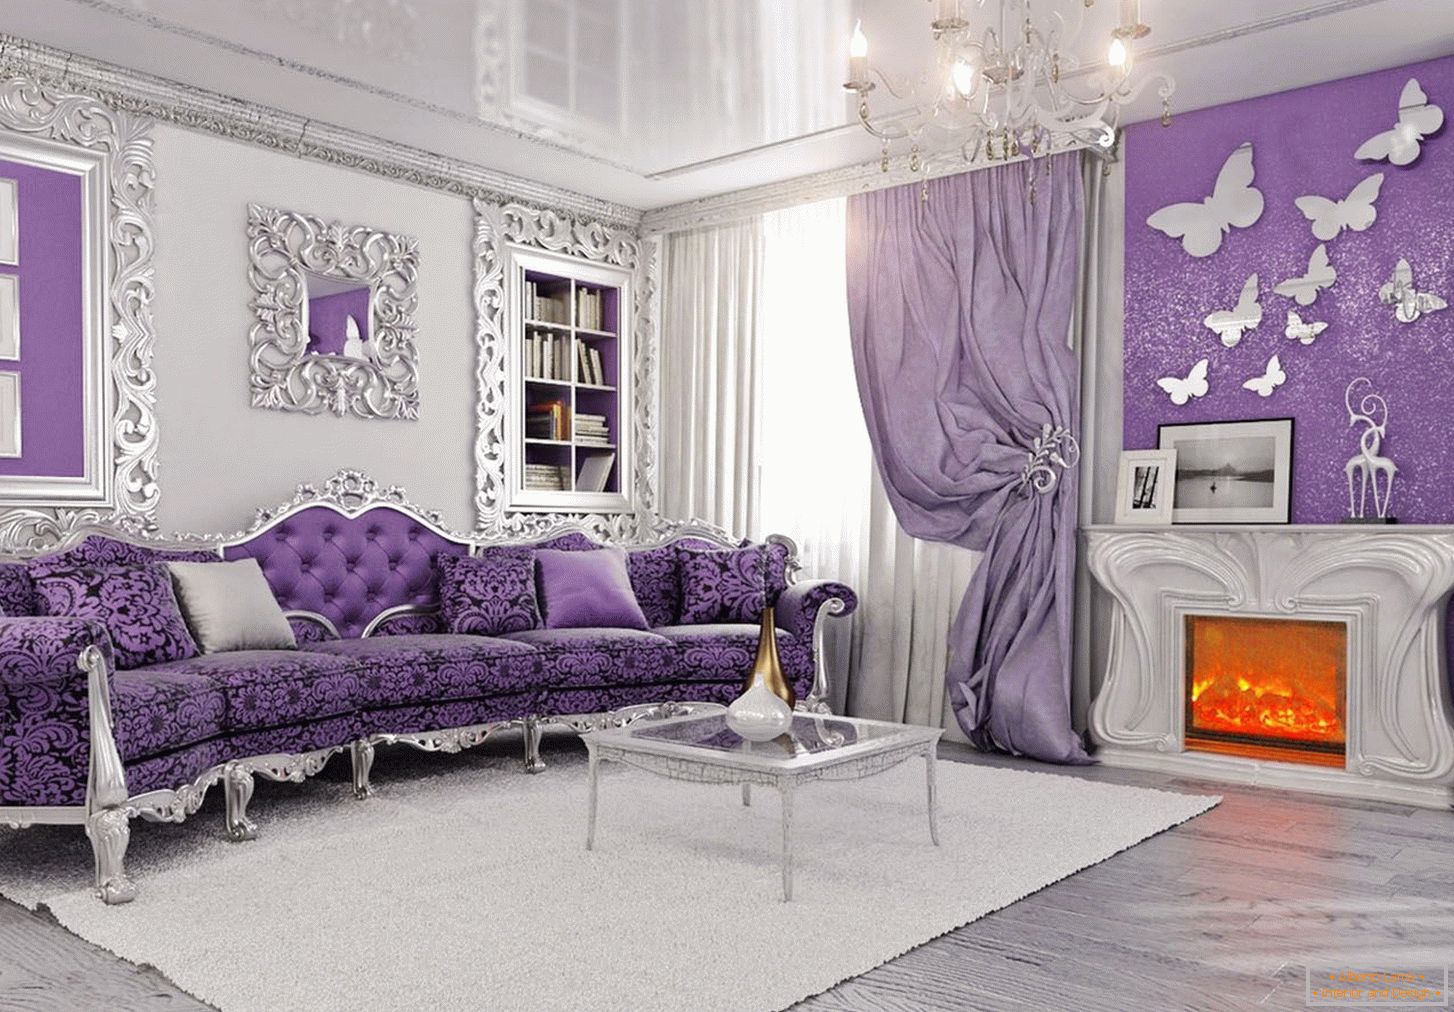 Interior design in lavender color